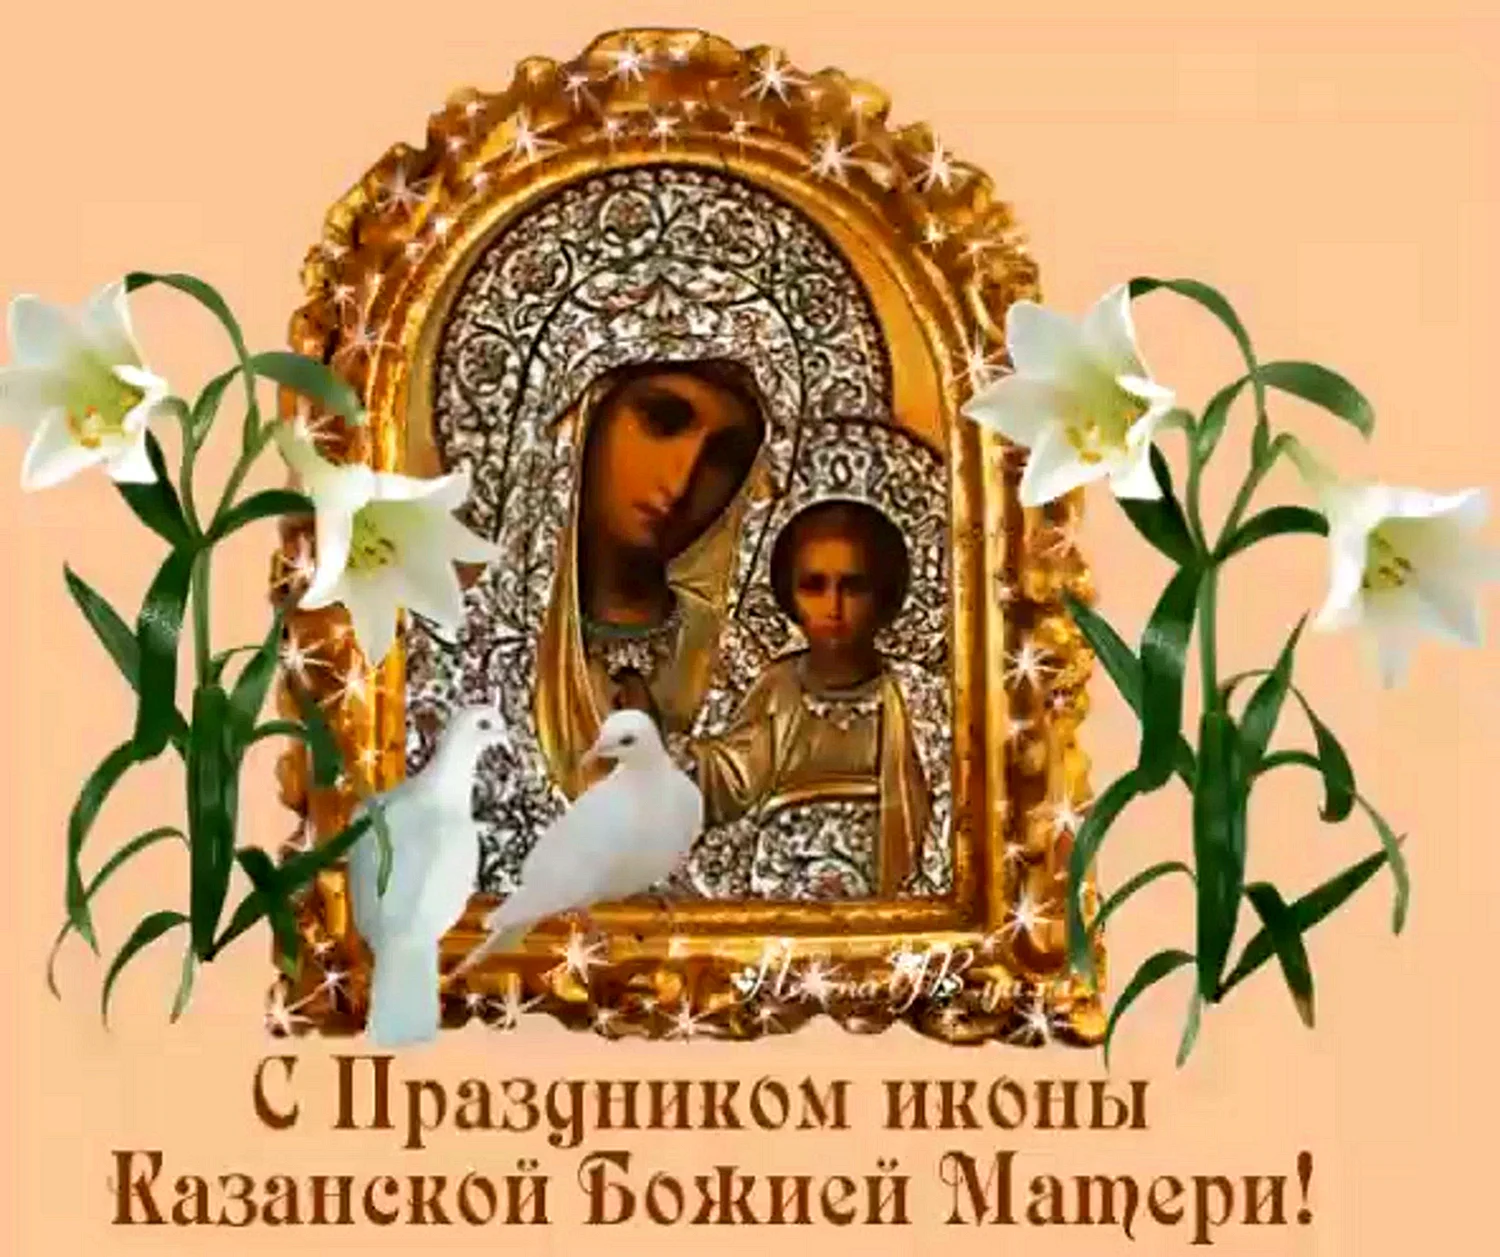 Праздник иконы Казанской Божьей матери в 2019